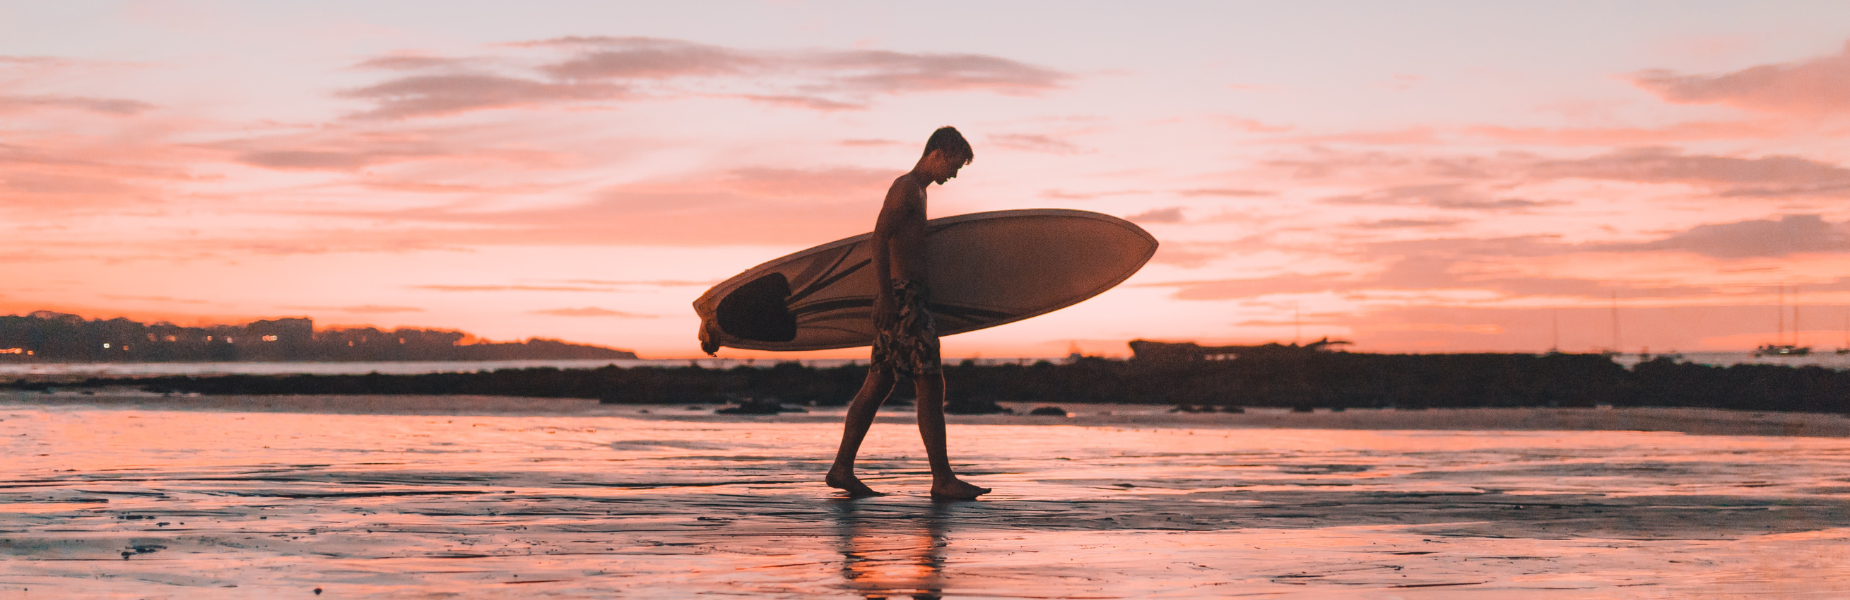 Een surfer met een surfboard die langs de zee loopt. Op de achtergrond zie je water, de ondergaande zon en een rode lucht met wolken.